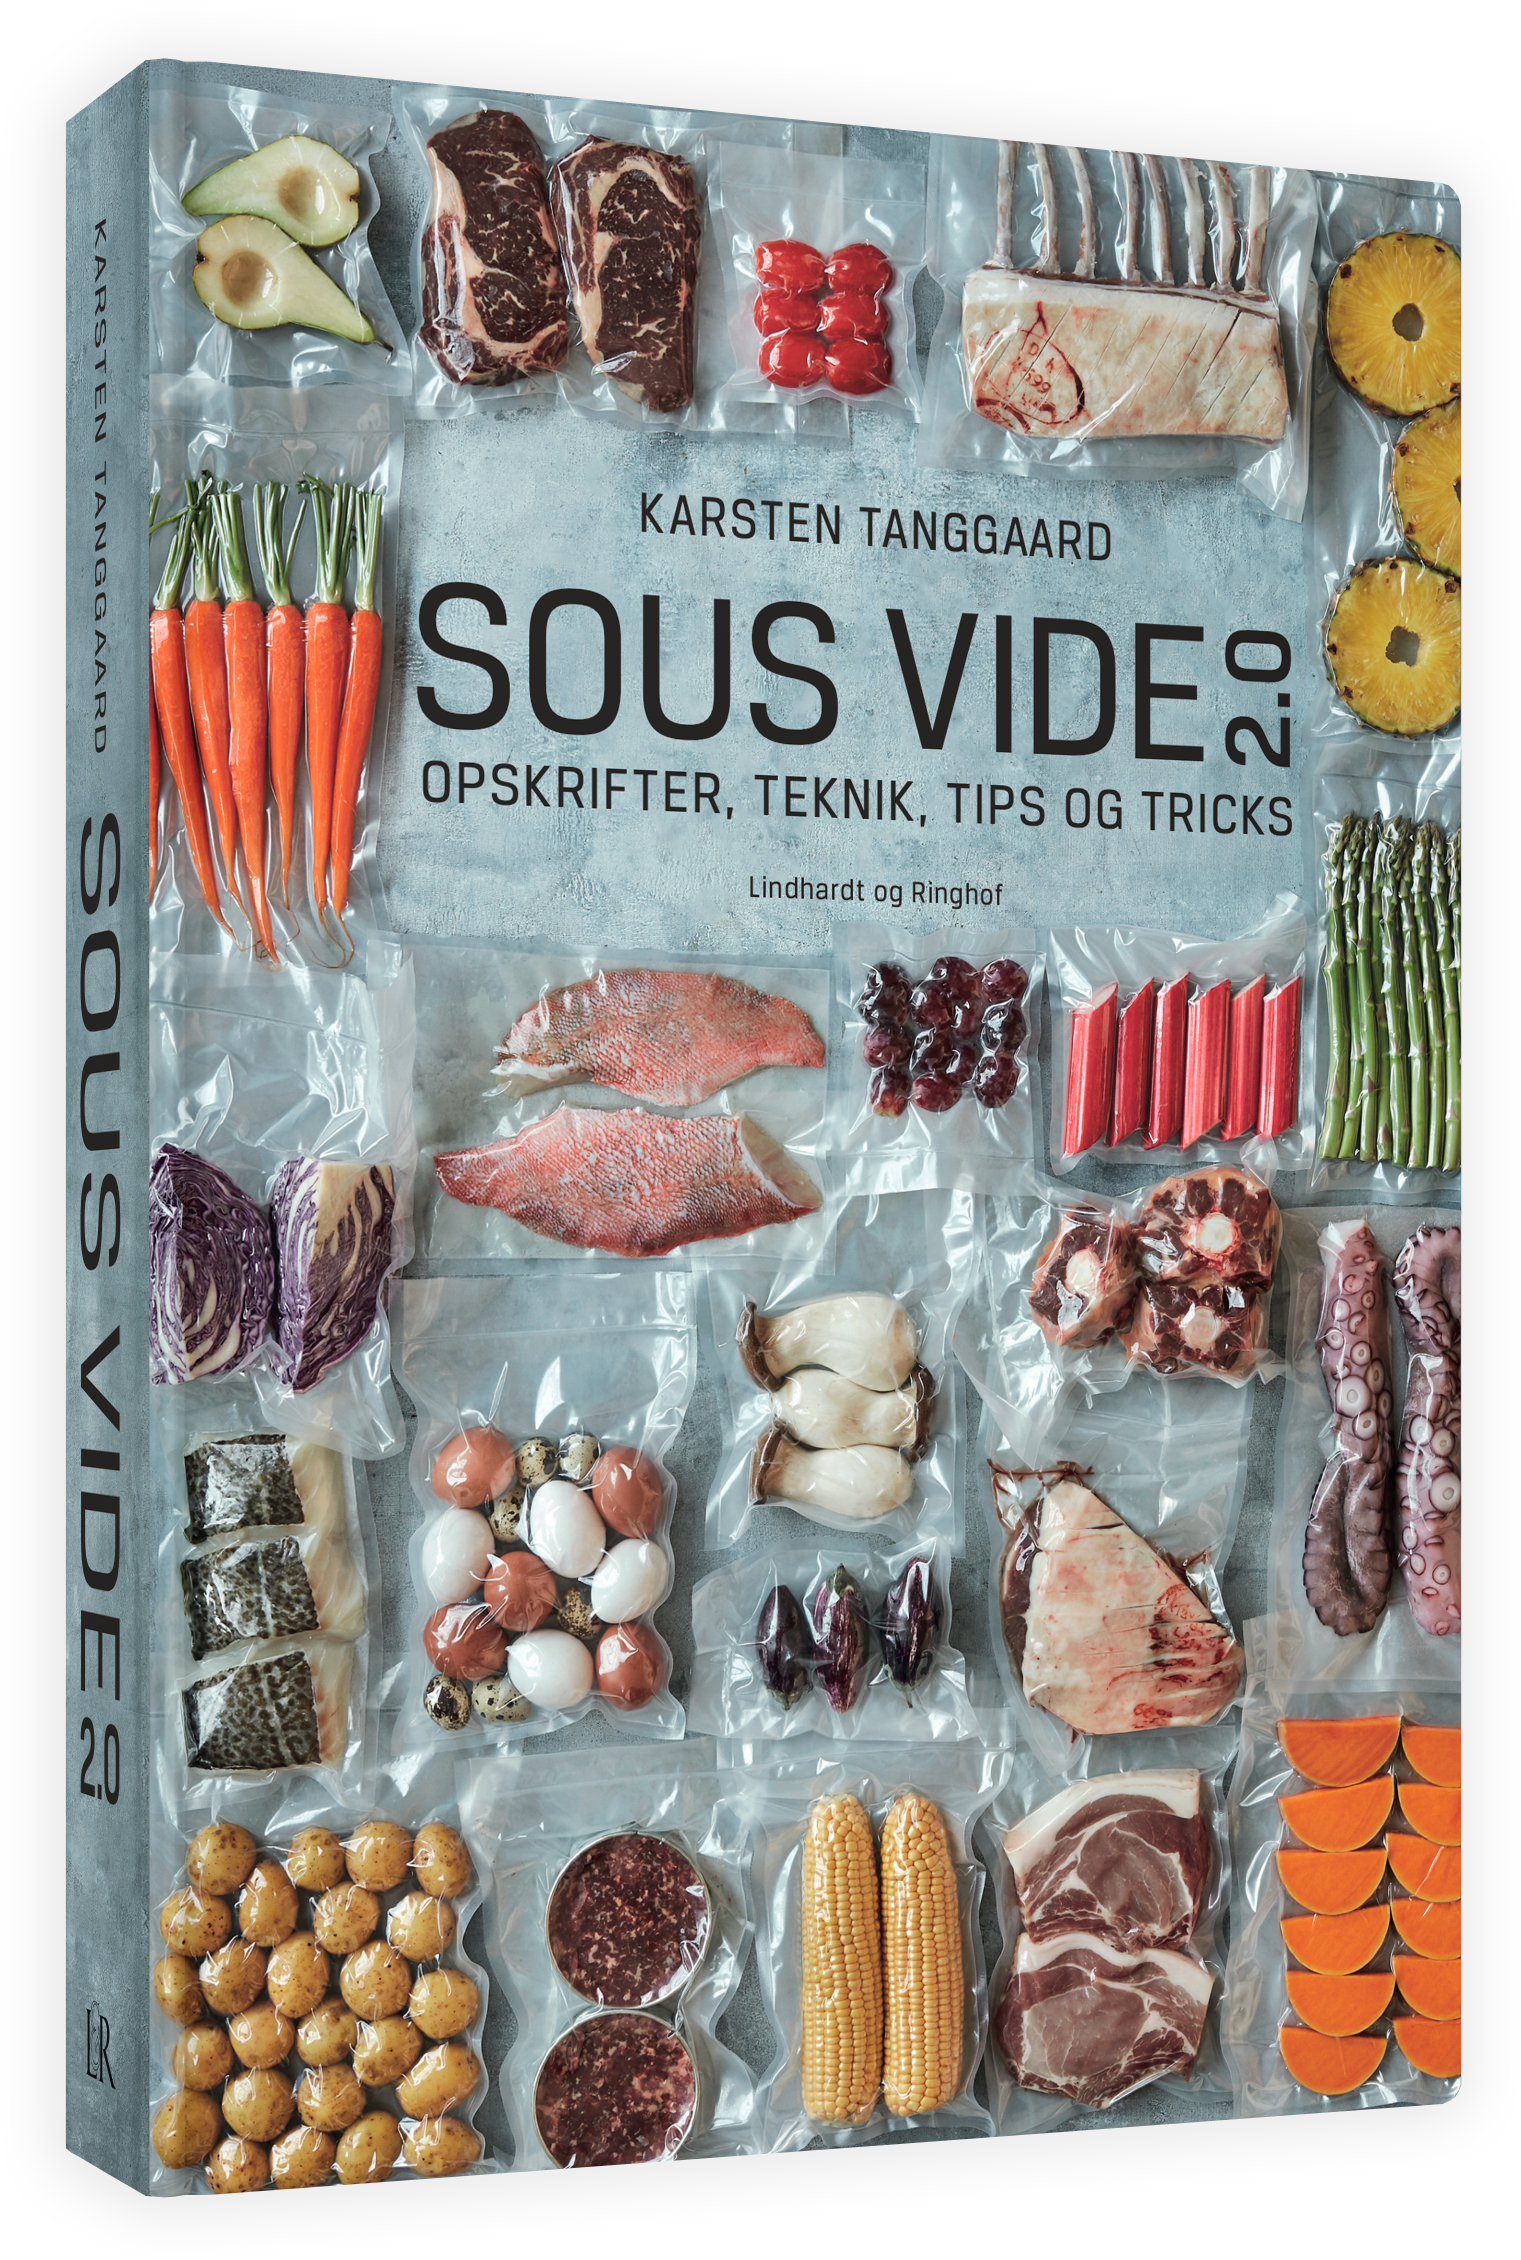 overgive indlogering transmission Sous Vide i dit eget køkken - Bøger om Sous Vide - TBS Grillshop